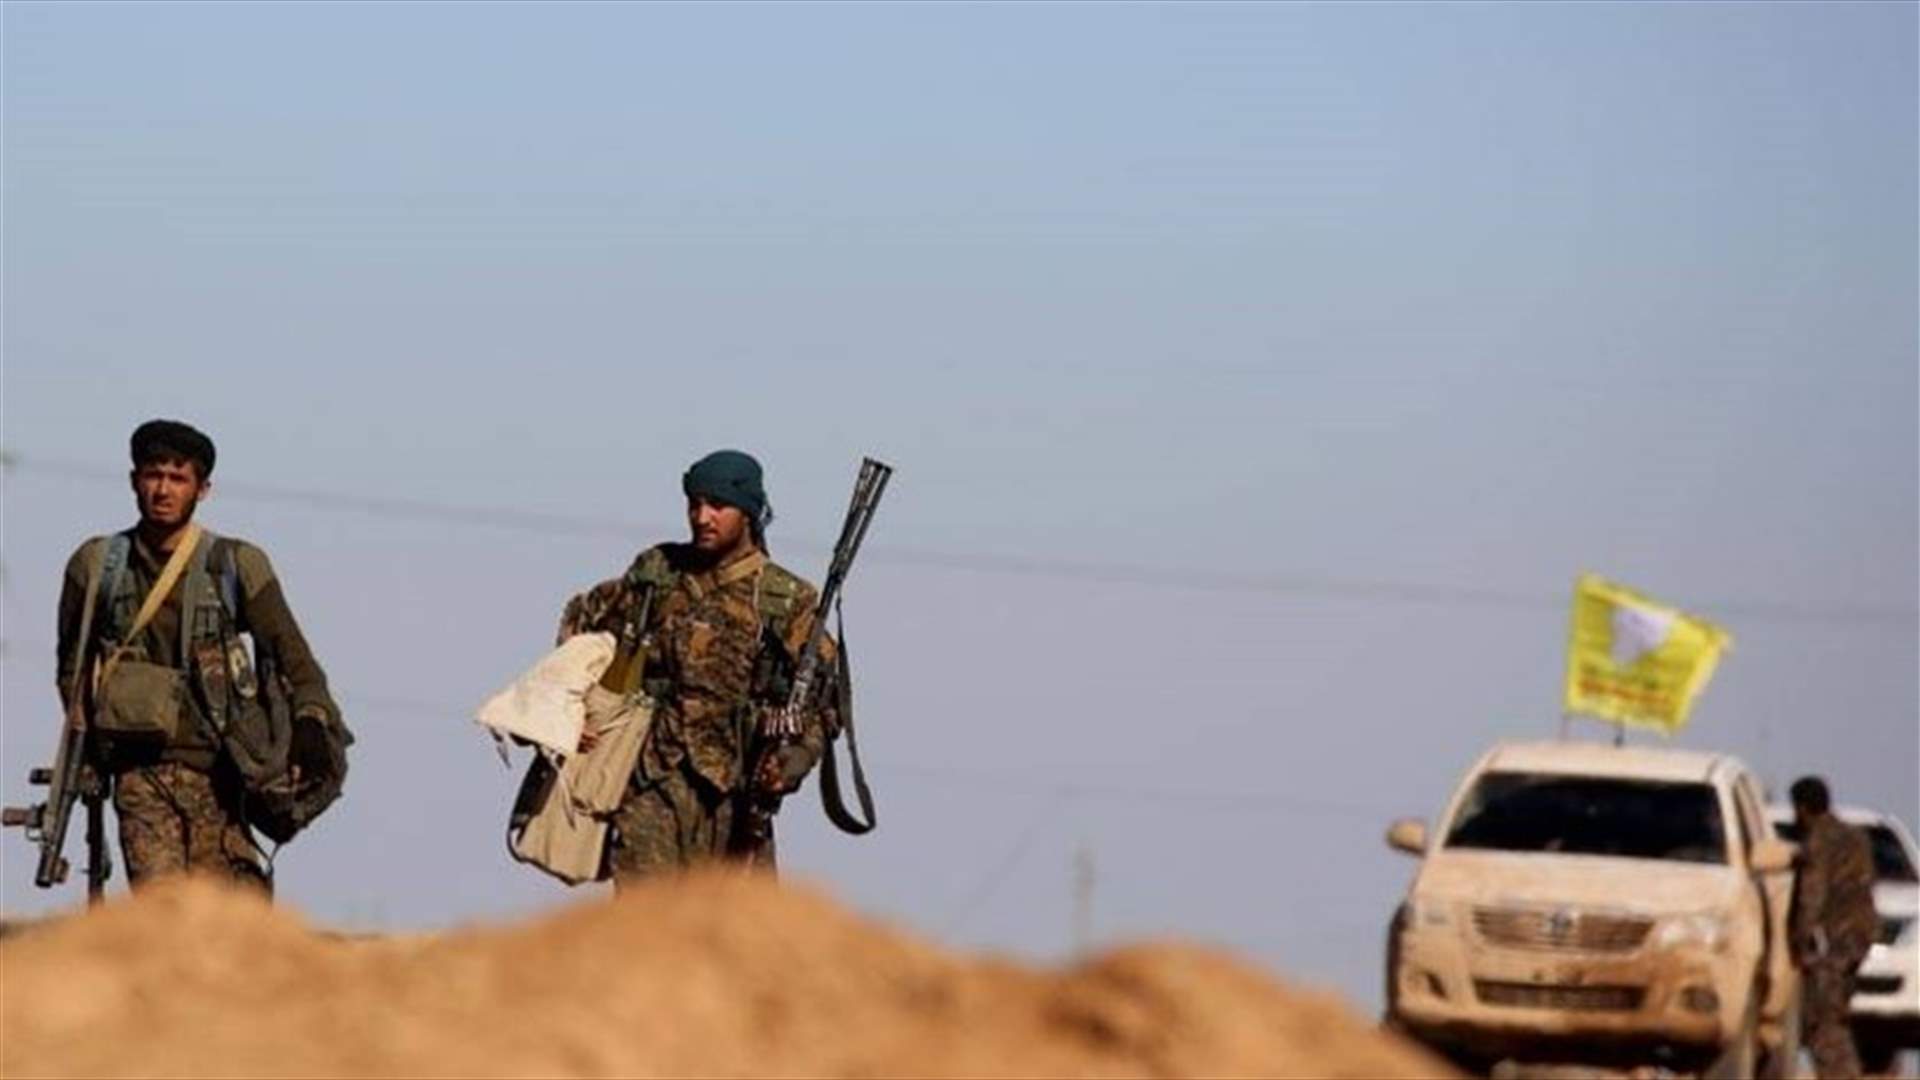 قوات سوريا الديمقراطية تعلن اعتقال اثنين من داعش يحملان الجنسية الأميركية